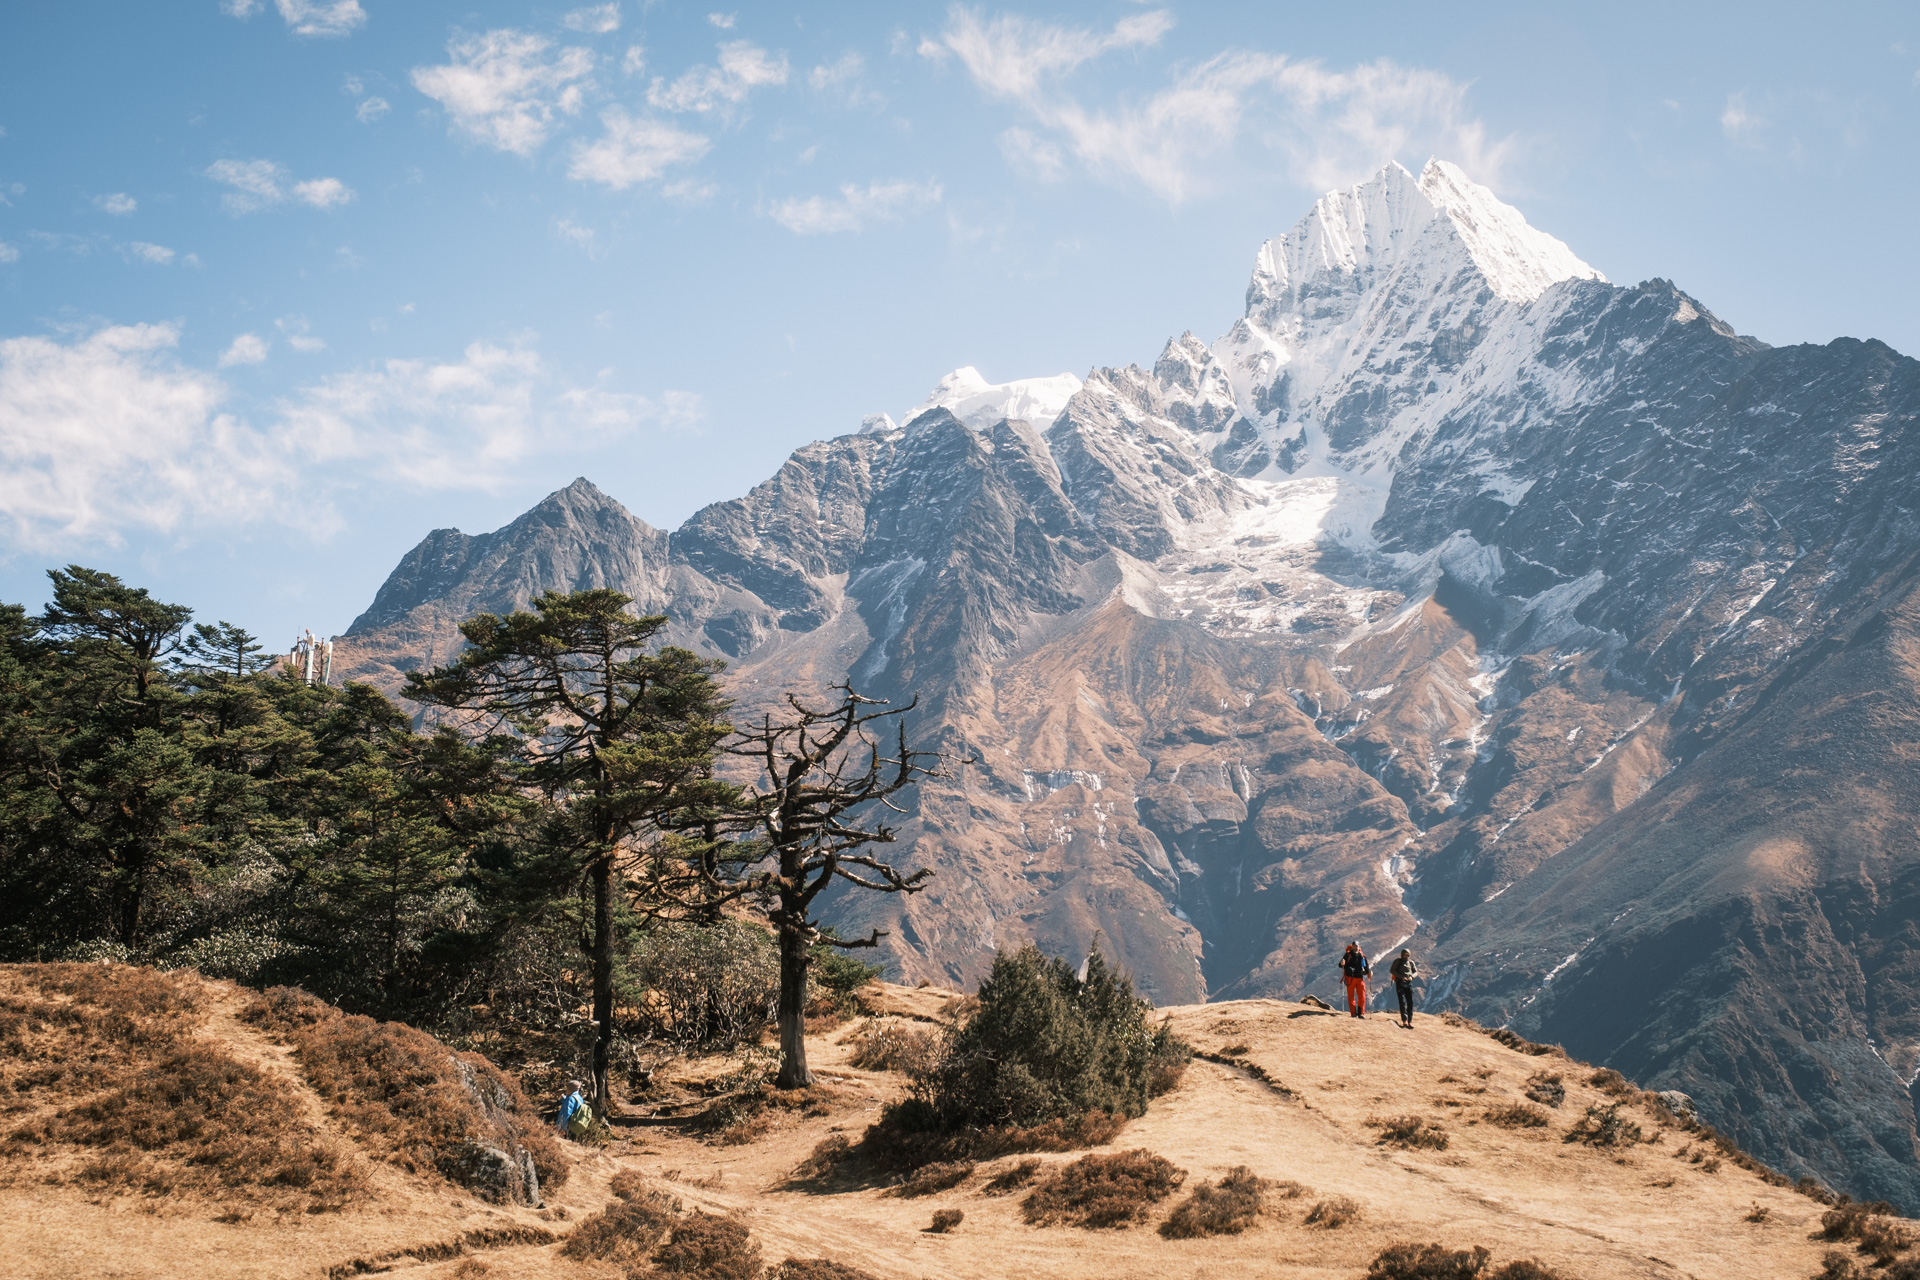 Berge des Himalaya in der Nähe des Mount Everest.